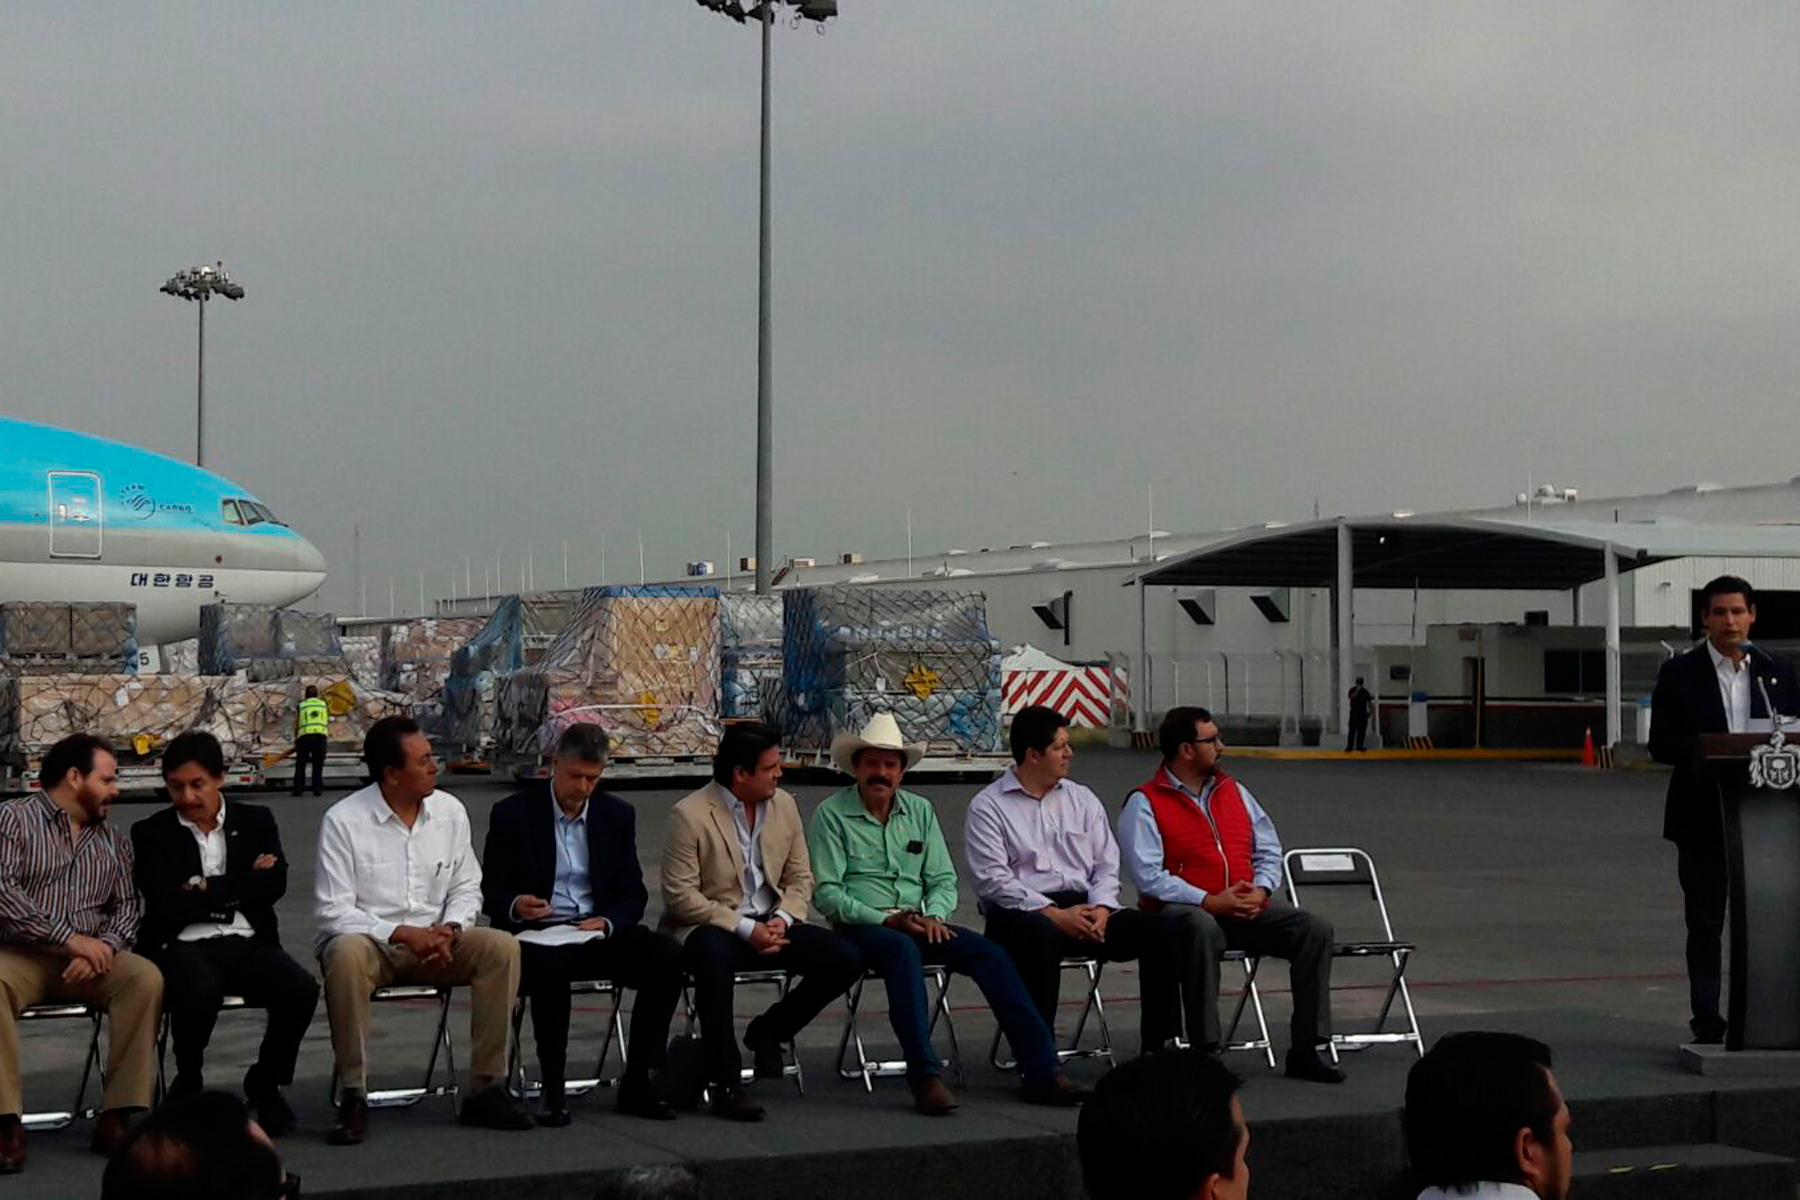 El 14 de junio salió de Jalisco, vía aérea, un cargamento de 420 cajas de mora azul a China